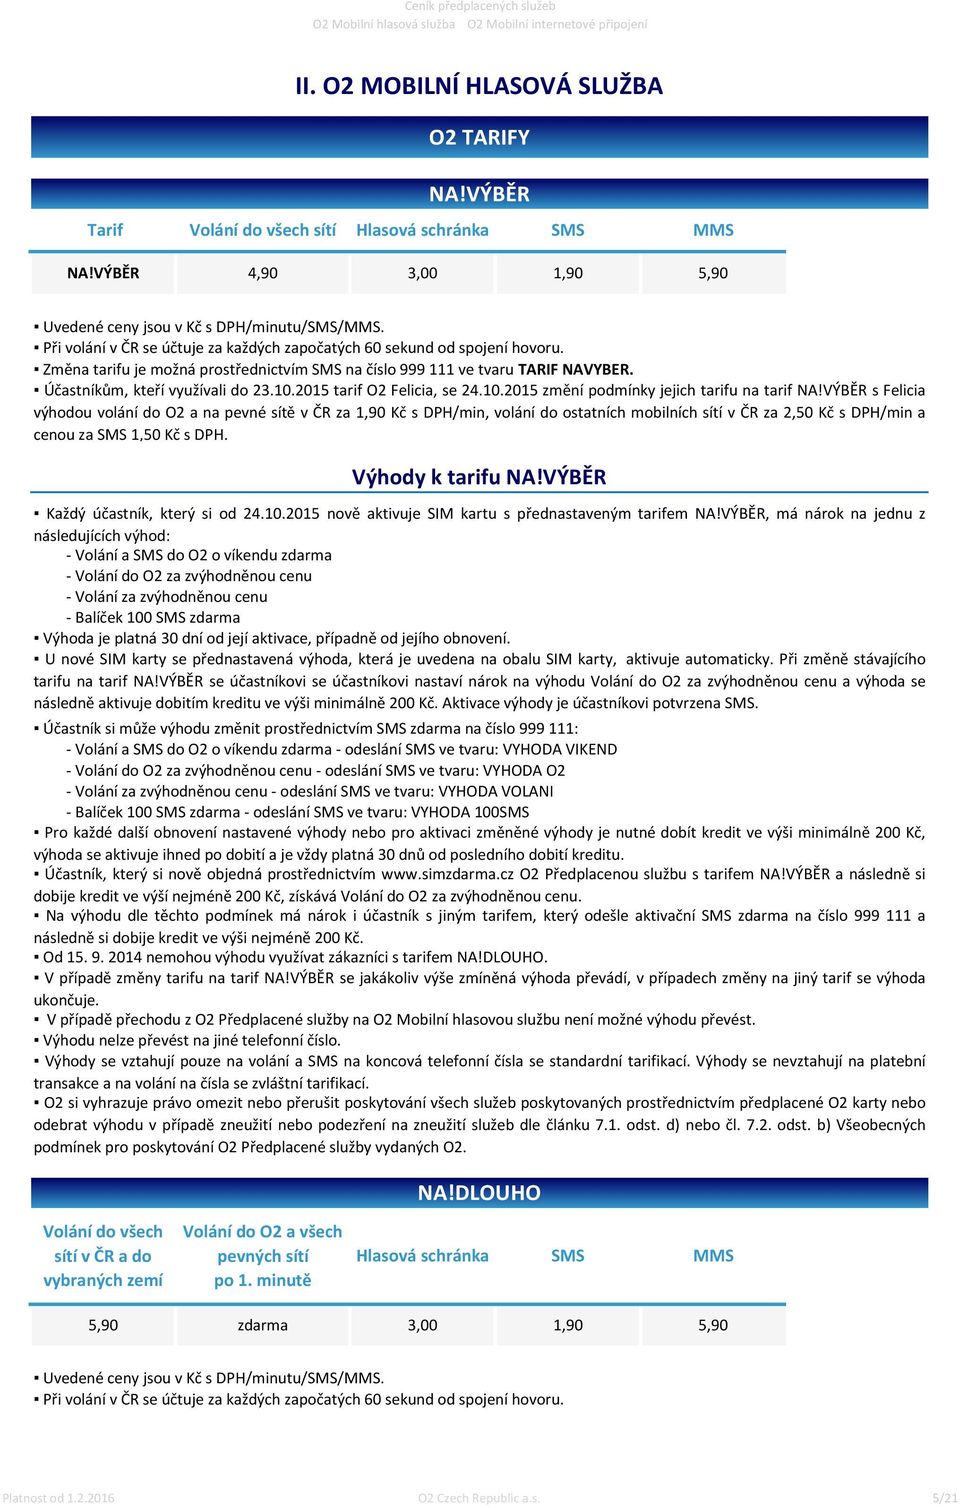 2015 tarif O2 Felicia, se 24.10.2015 změní podmínky jejich tarifu na tarif NA!